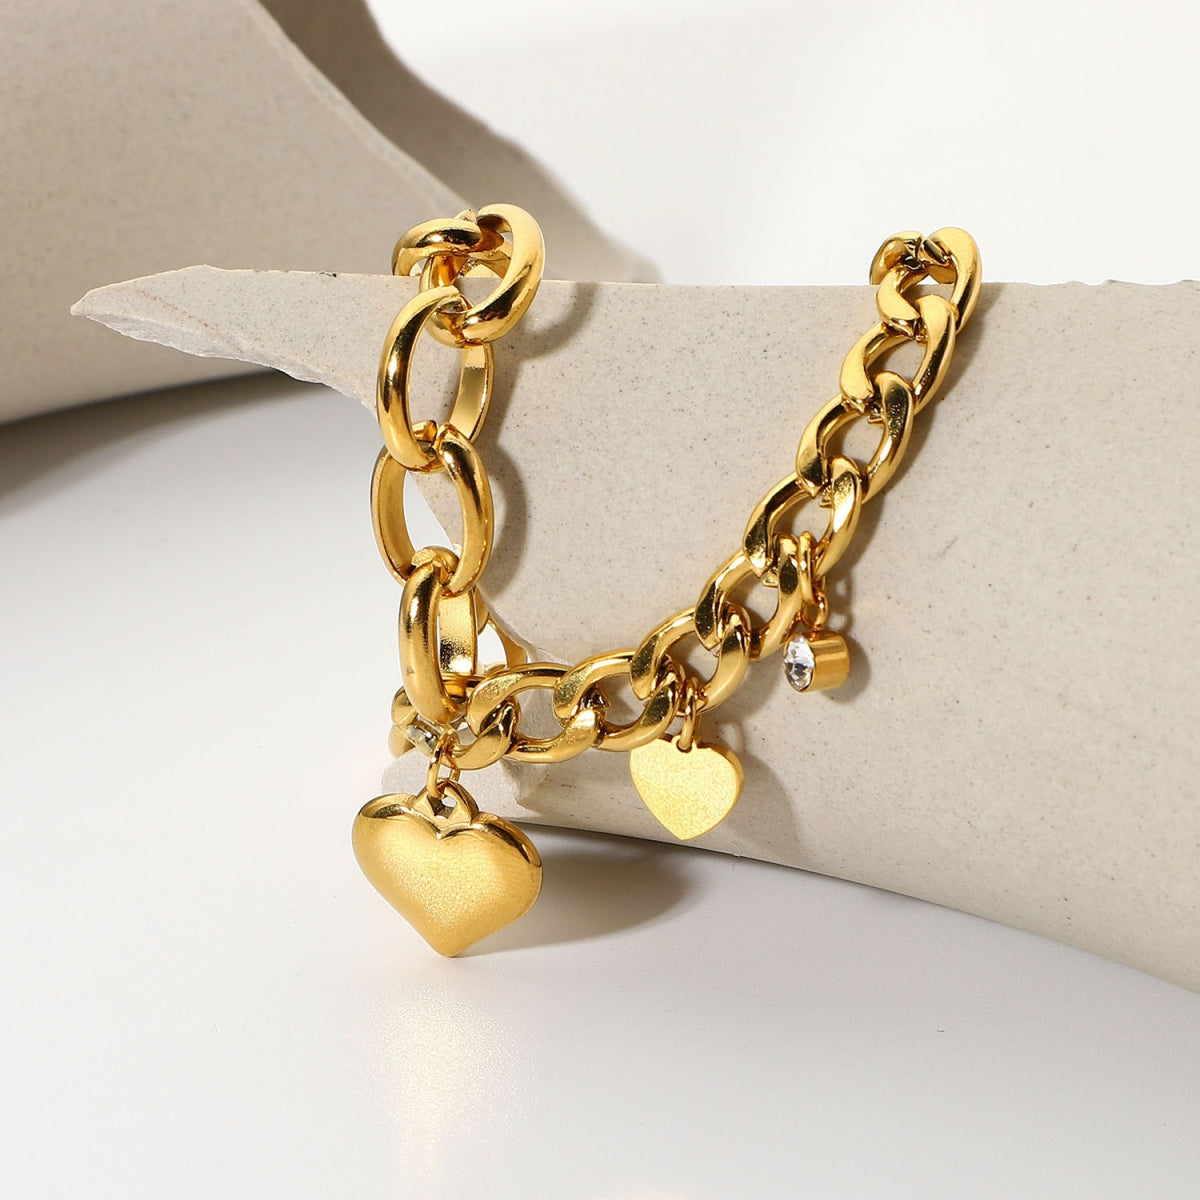 ZB0138 Stainless Steel Heart Pendant Chain Bracelet